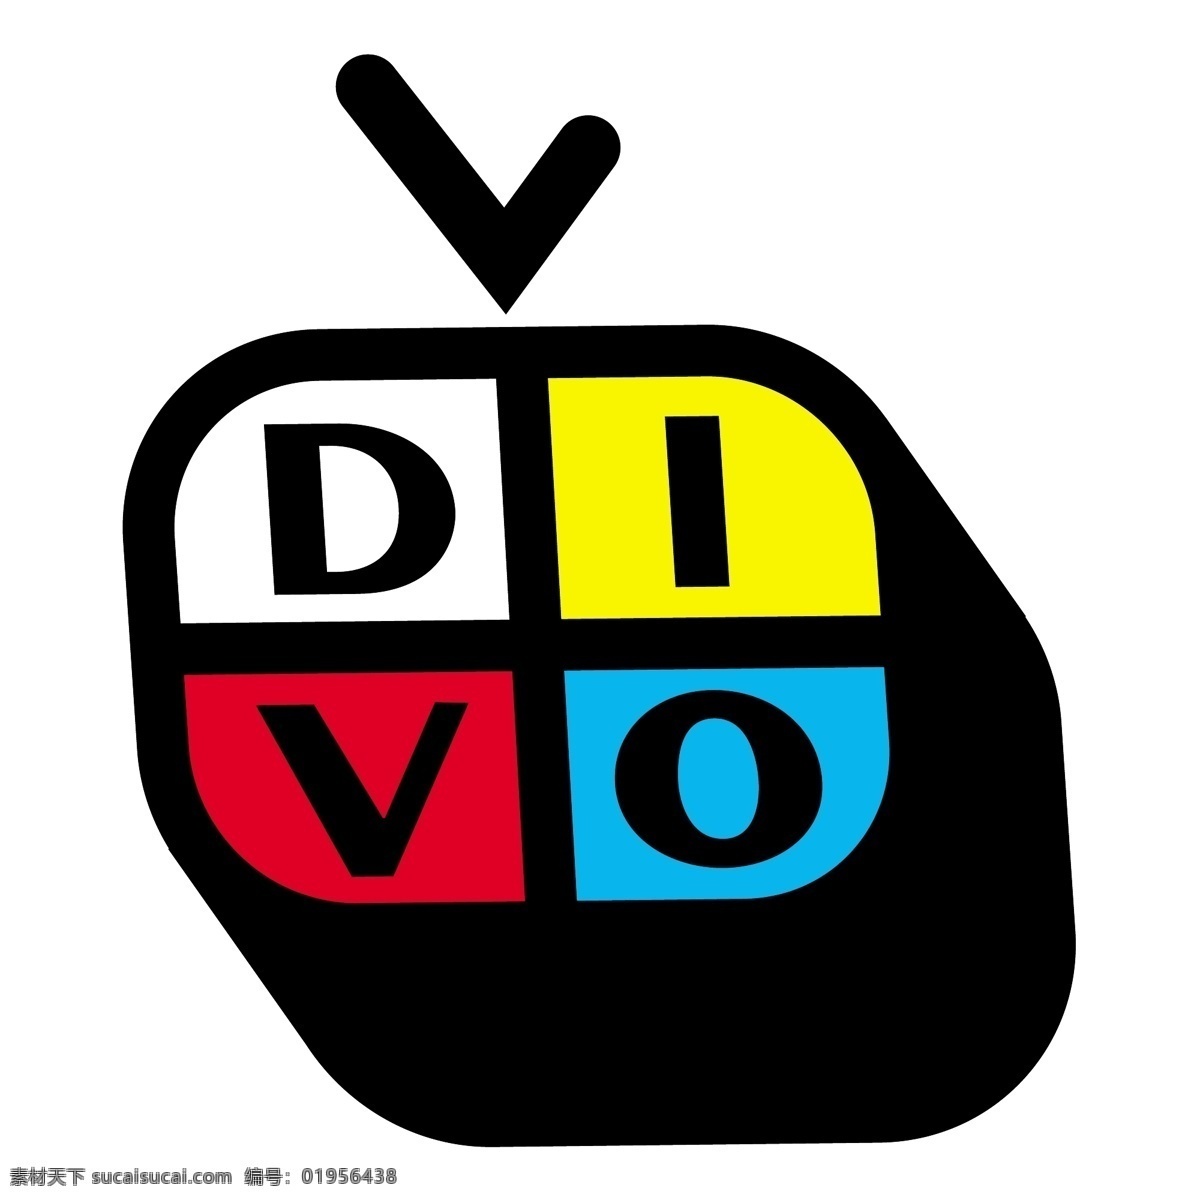 迪沃电视0 电视 免费矢量 迪沃 免费 媒介 免费的矢量 矢量 艺术 免费矢量图片 电视免费矢量 图形 电视图像 矢量图 建筑家居